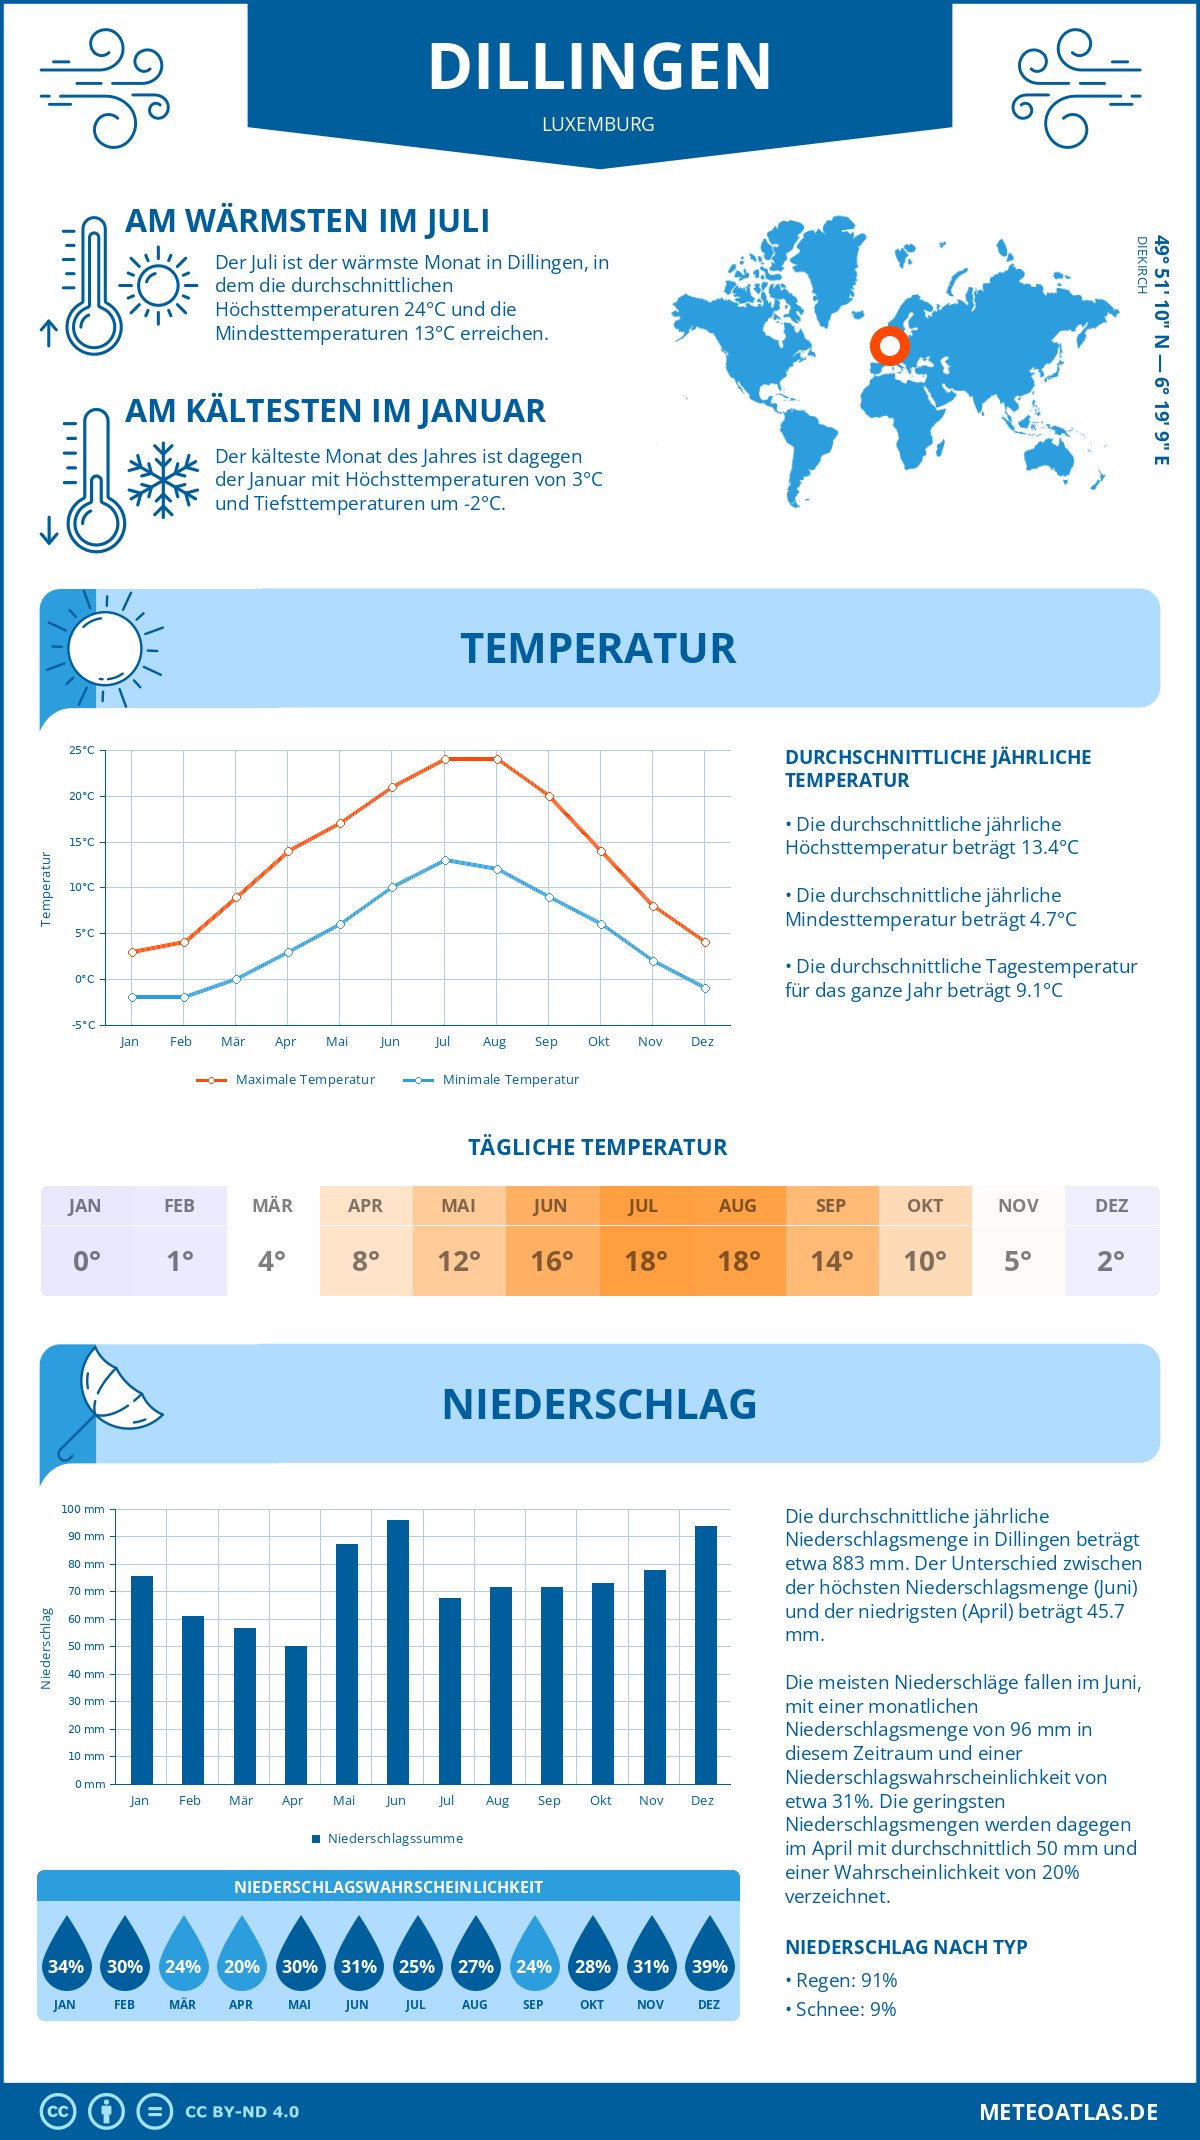 Wetter Dillingen (Luxemburg) - Temperatur und Niederschlag